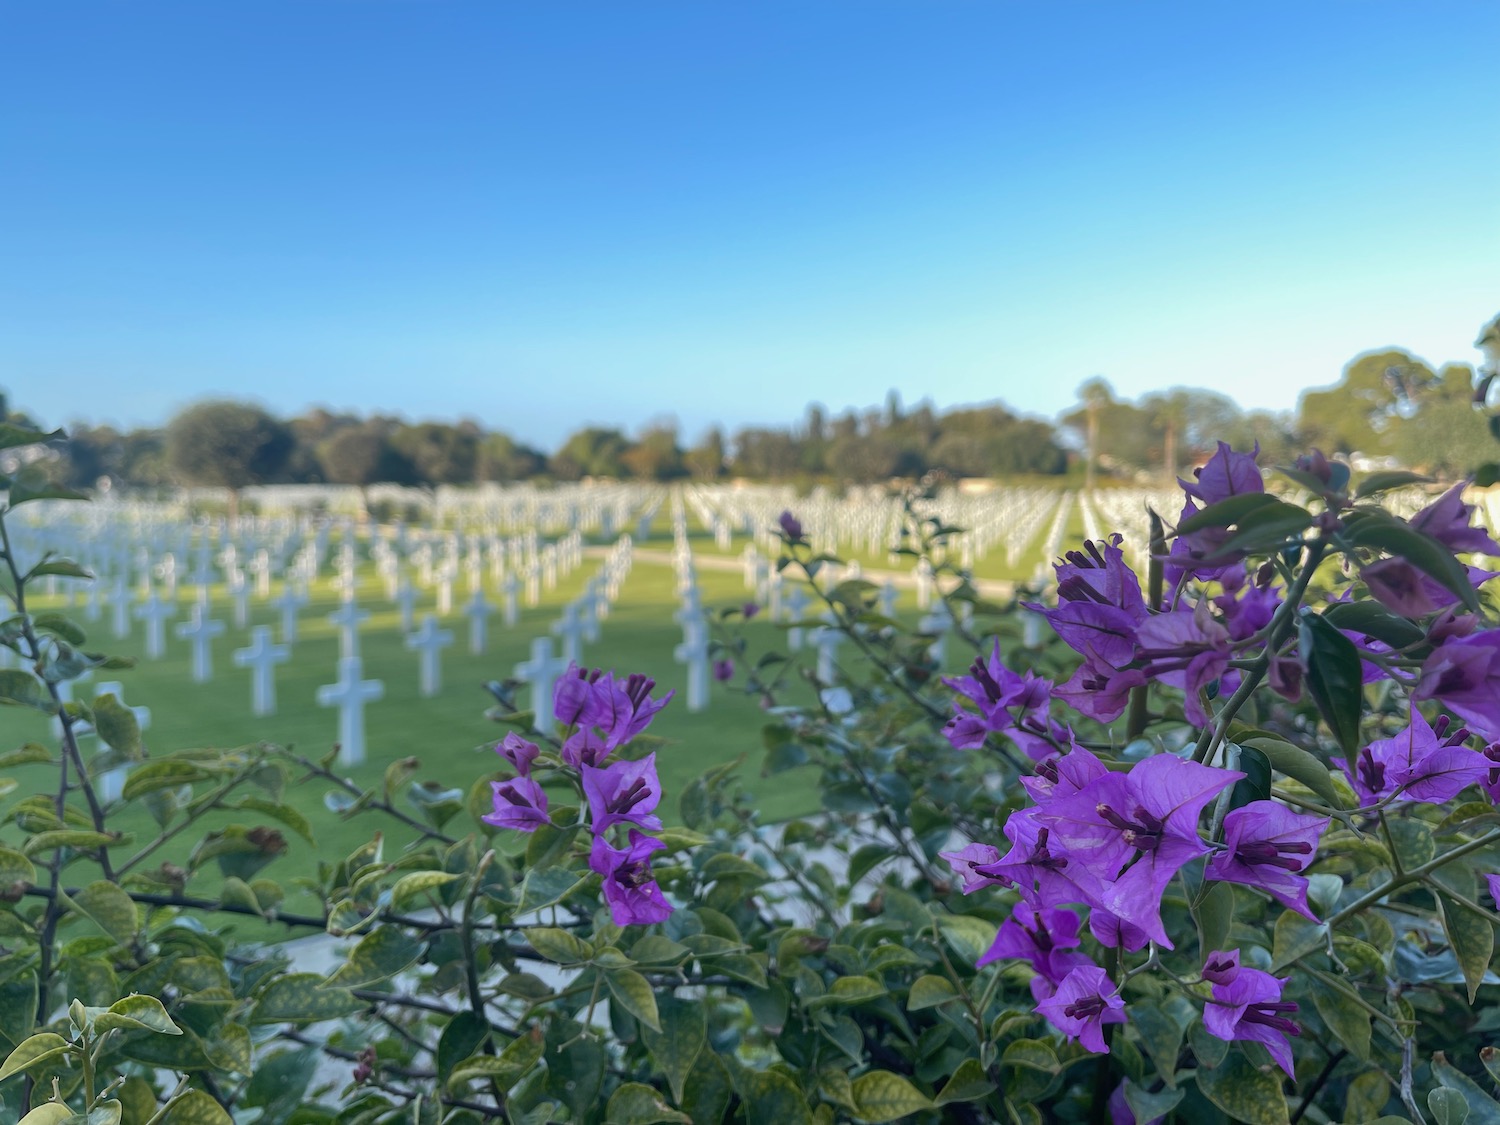 a purple flowers in a field of white crosses